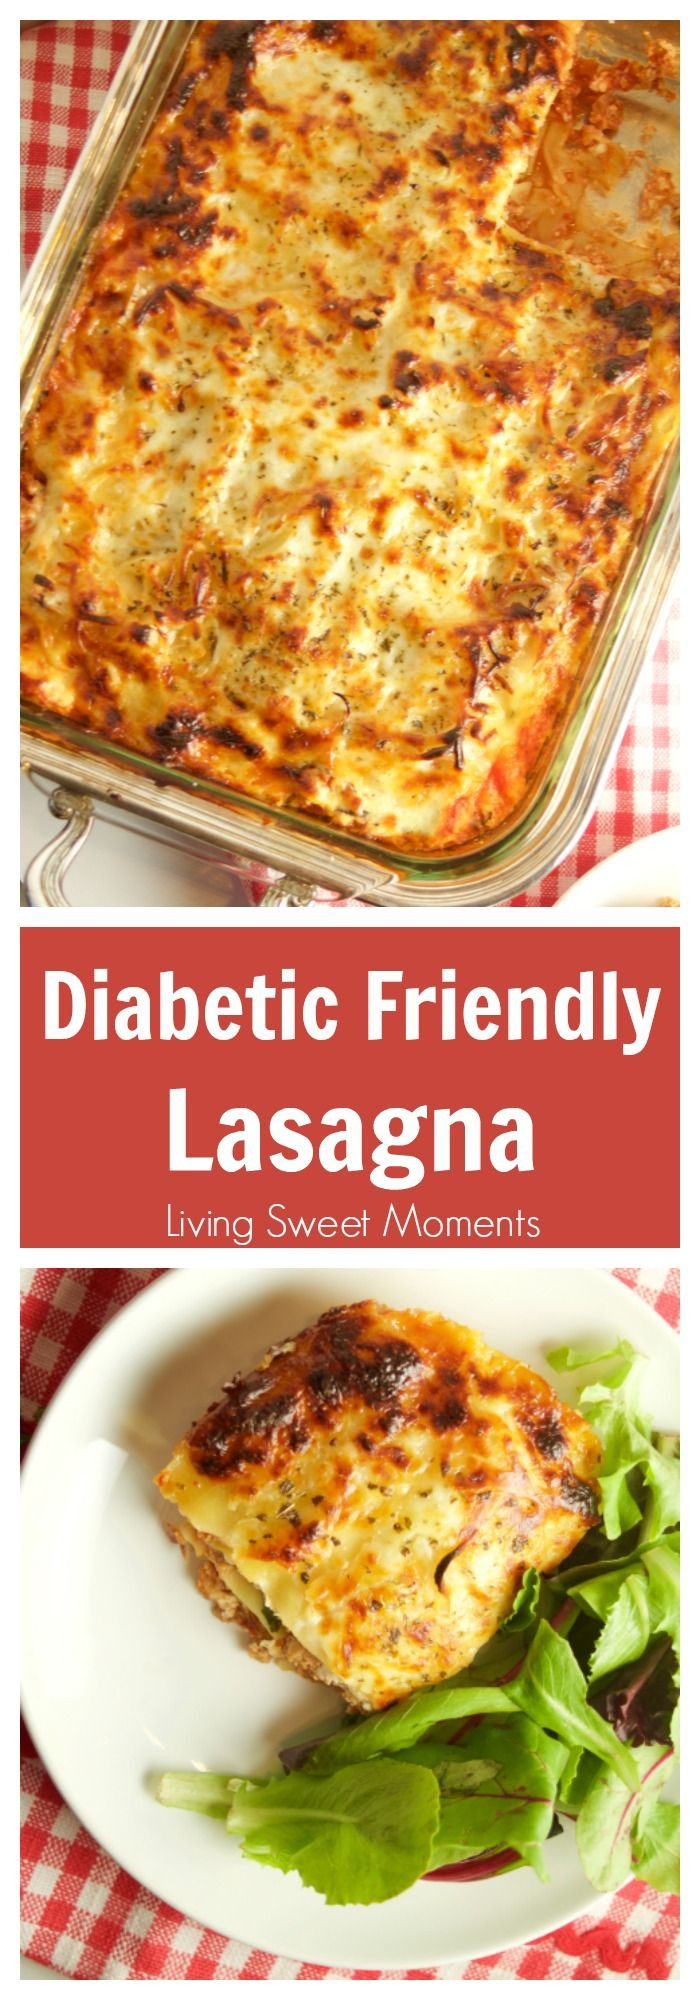 Easy Diabetic Dinners
 100 Diabetic Dinner Recipes on Pinterest